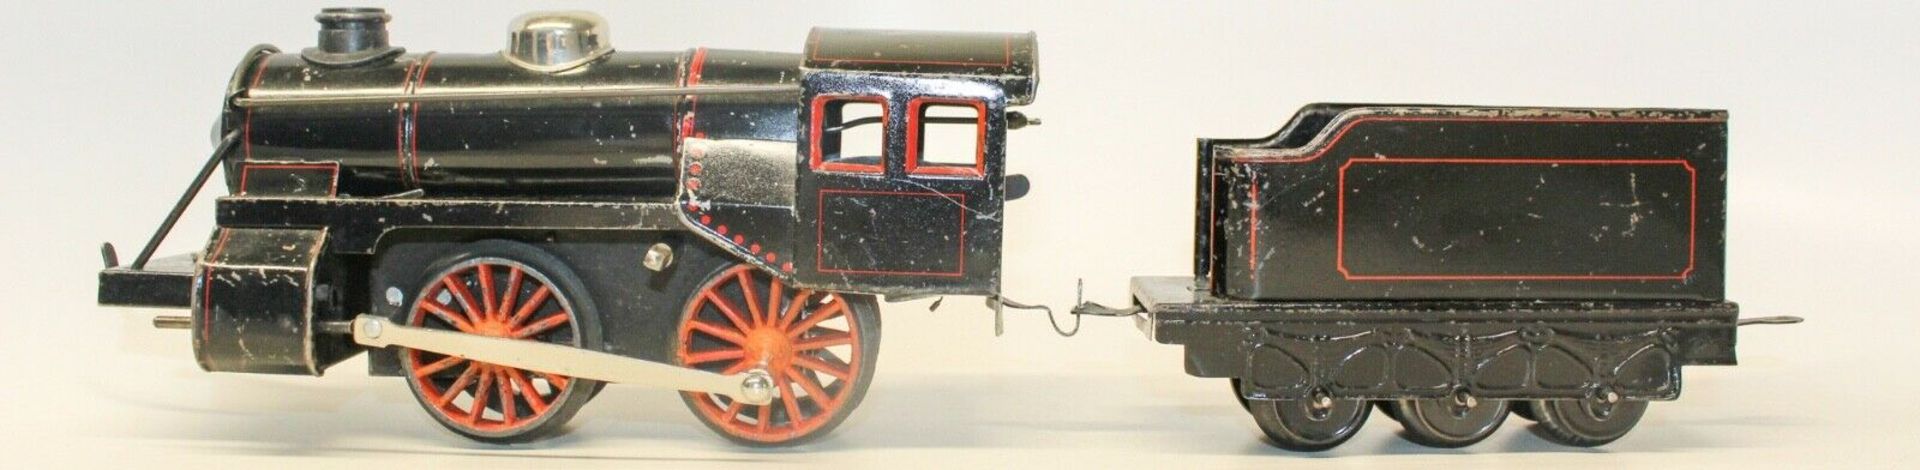 Karl Bub (KBN) Clockwork 0-Gauge Locomotive Vintage Large Passenger Train Set Tin Lithograp Large - Image 2 of 5